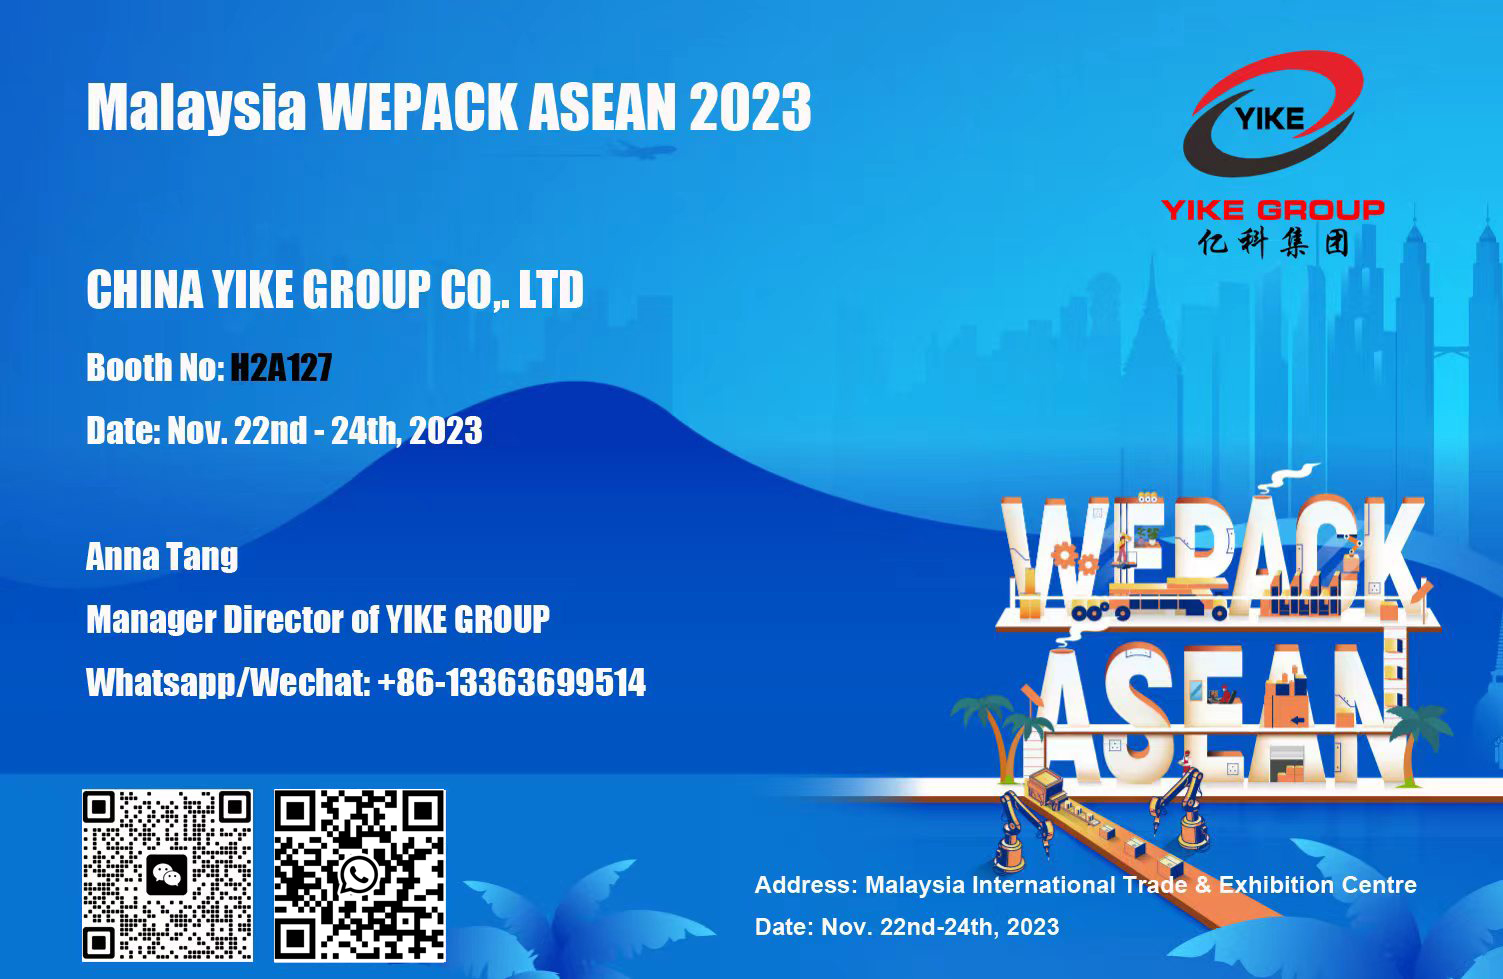 Malaysia WEPACK ASEAN 2023